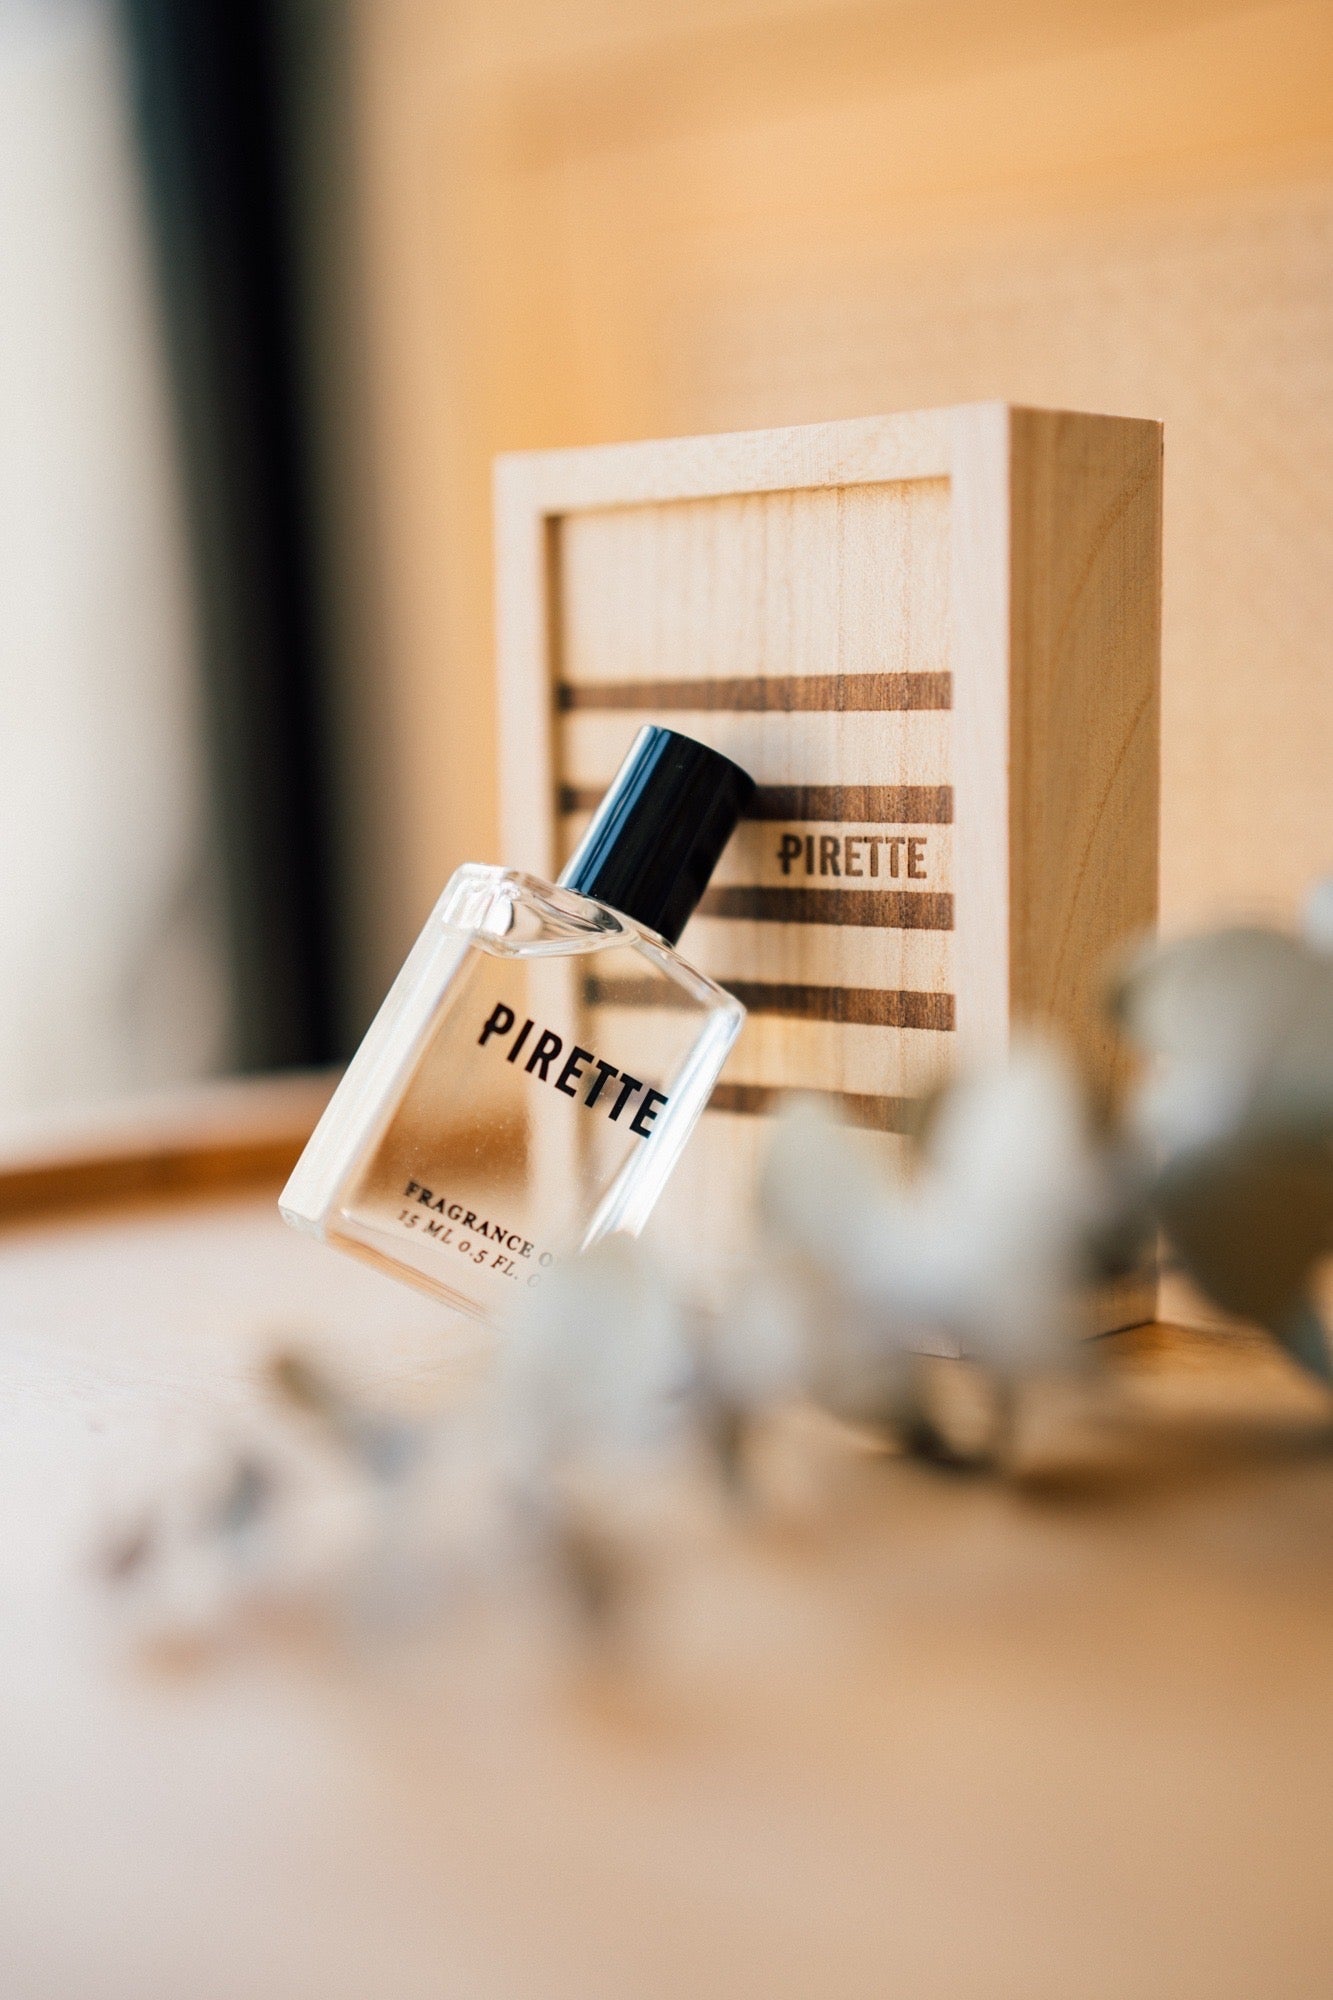 再入荷 Pirette Fragrance Oil from Newport, California